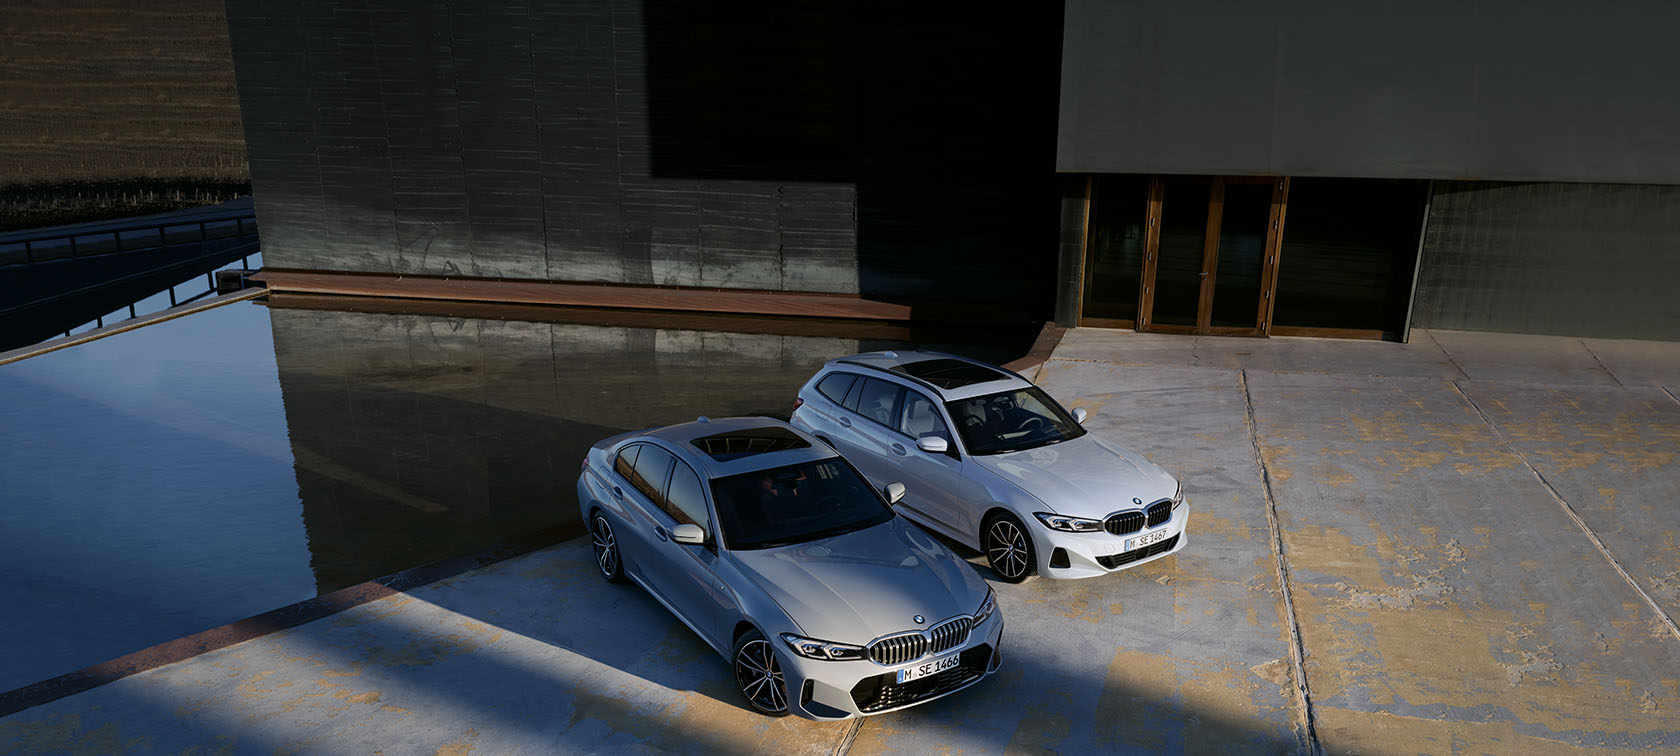 BMW X3 35d - Autotuning-Werkstatt in Crailsheim, Tuning